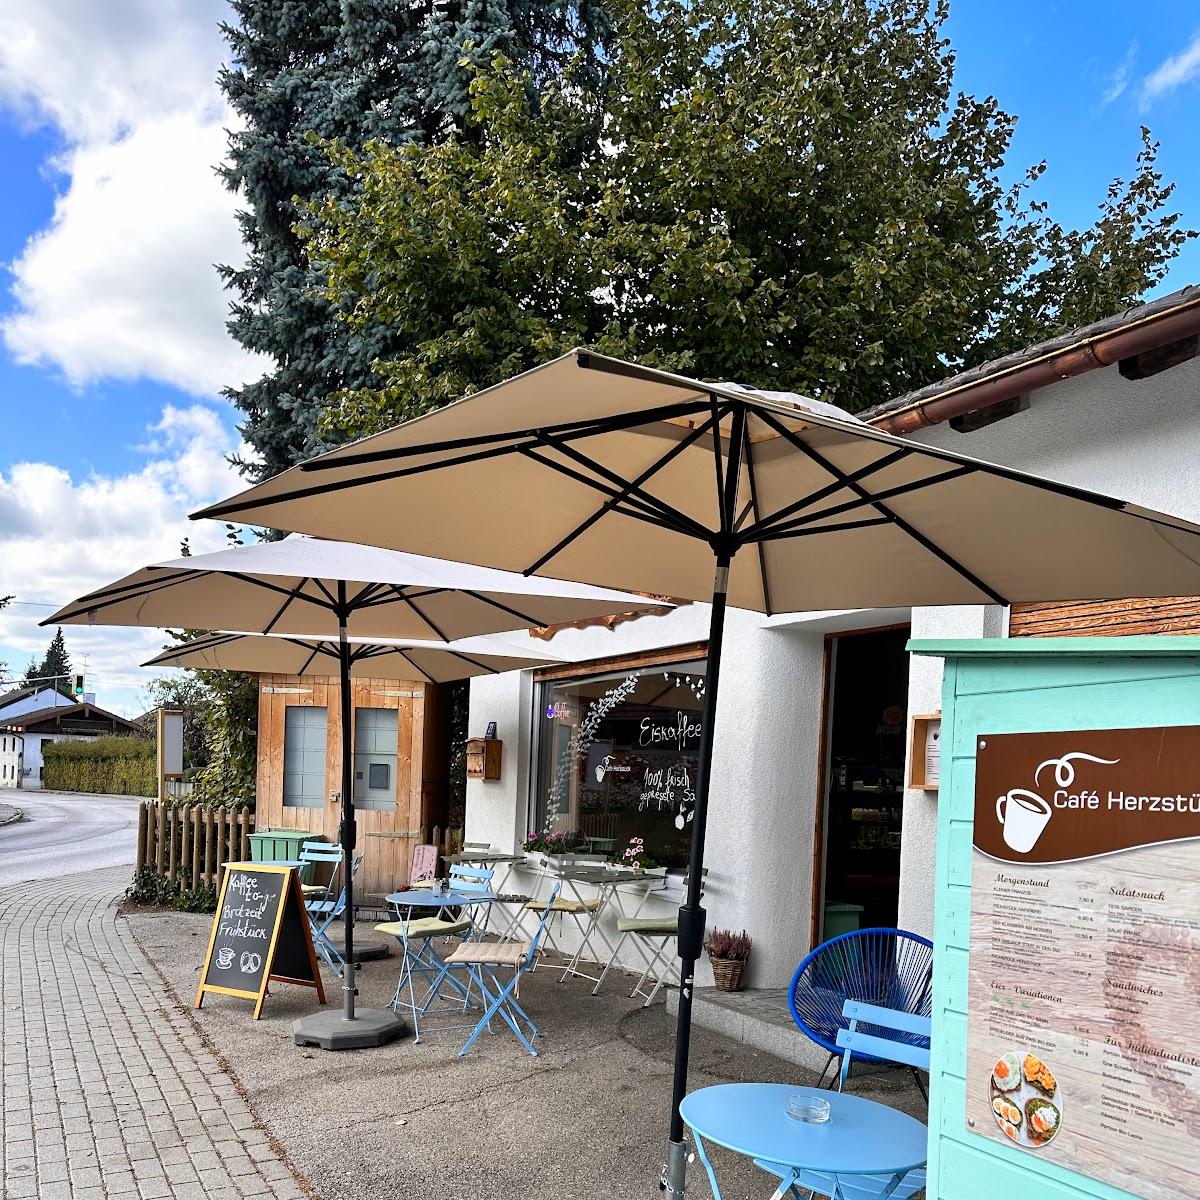 Restaurant "Café Herzstück" in Oberpframmern